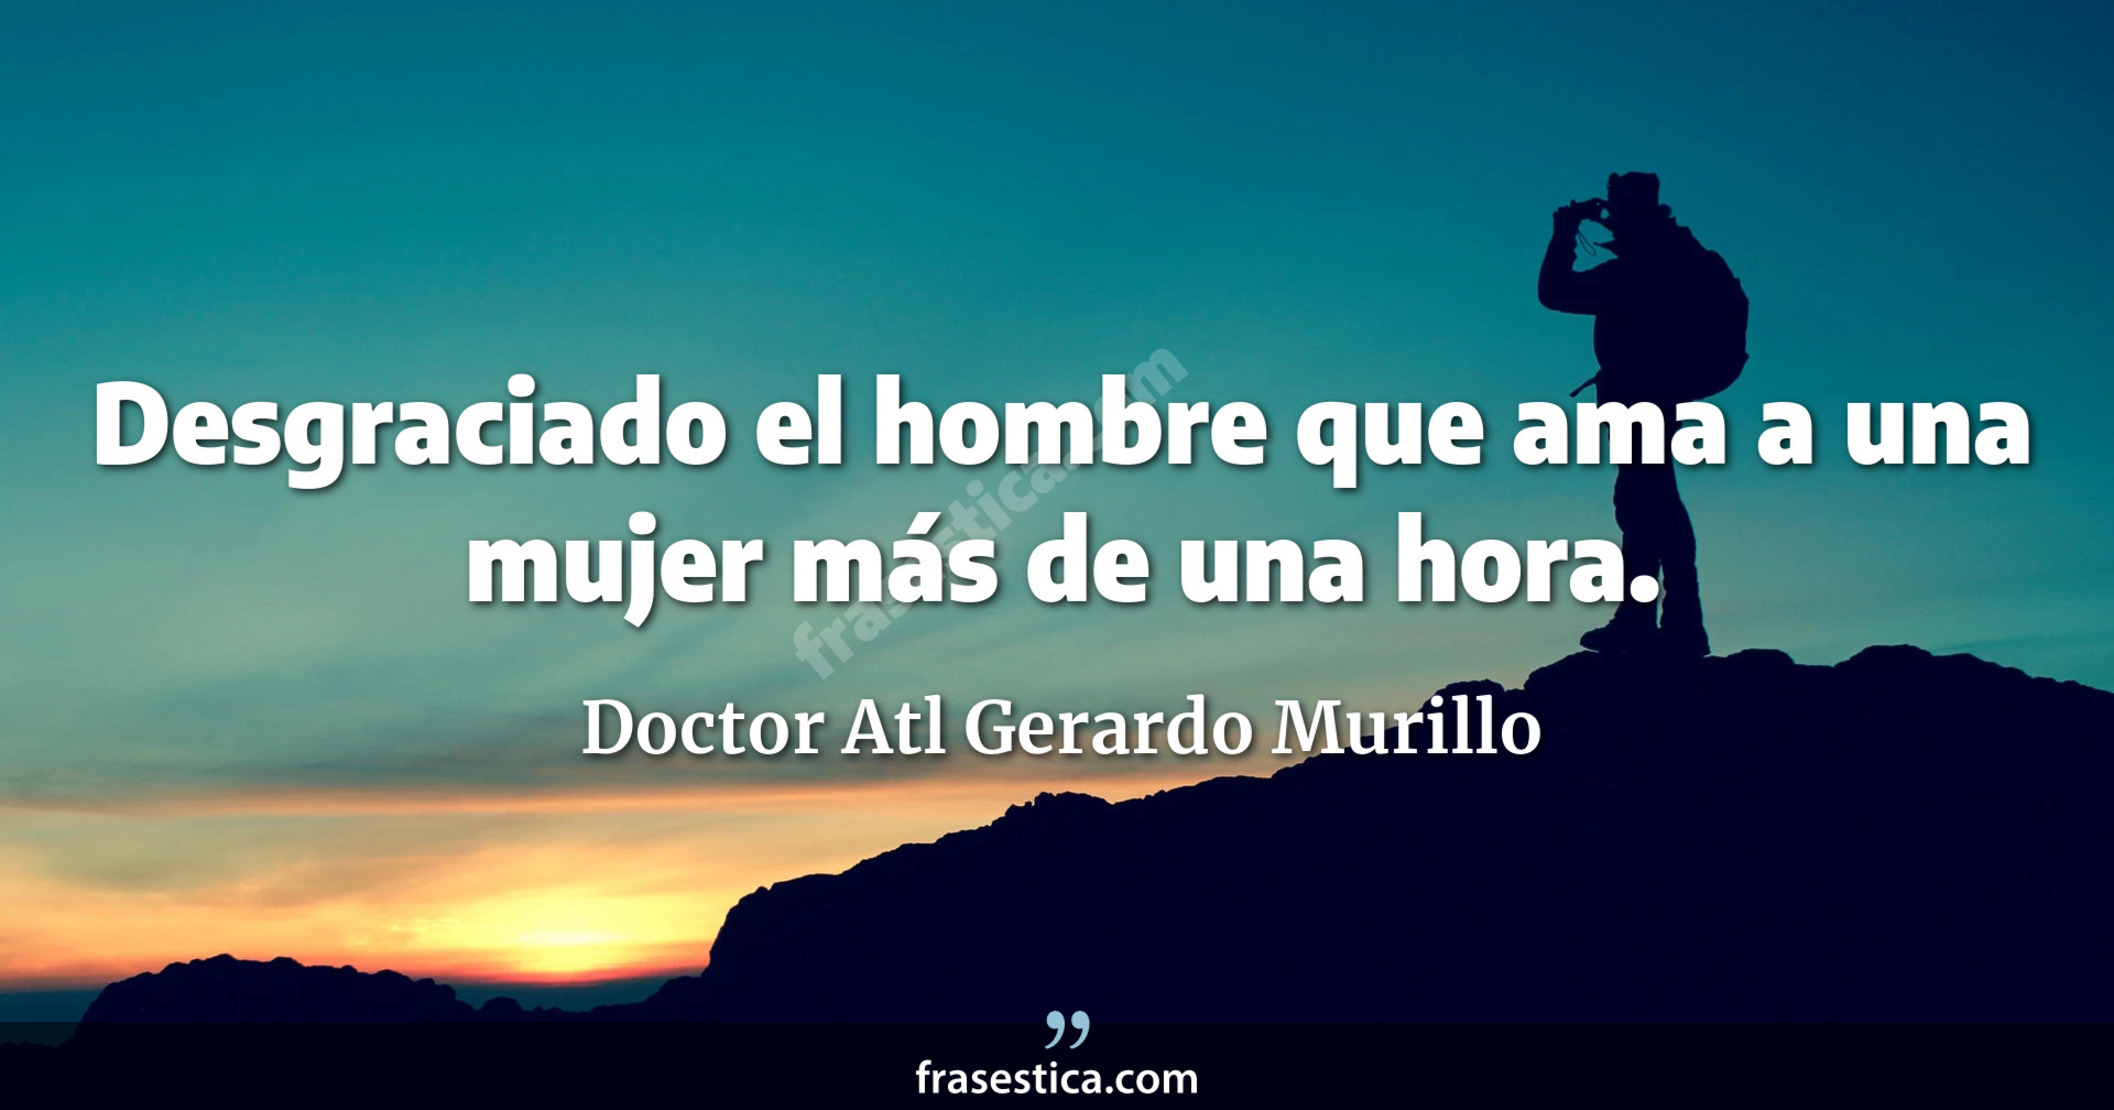 Desgraciado el hombre que ama a una mujer más de una hora. - Doctor Atl Gerardo Murillo